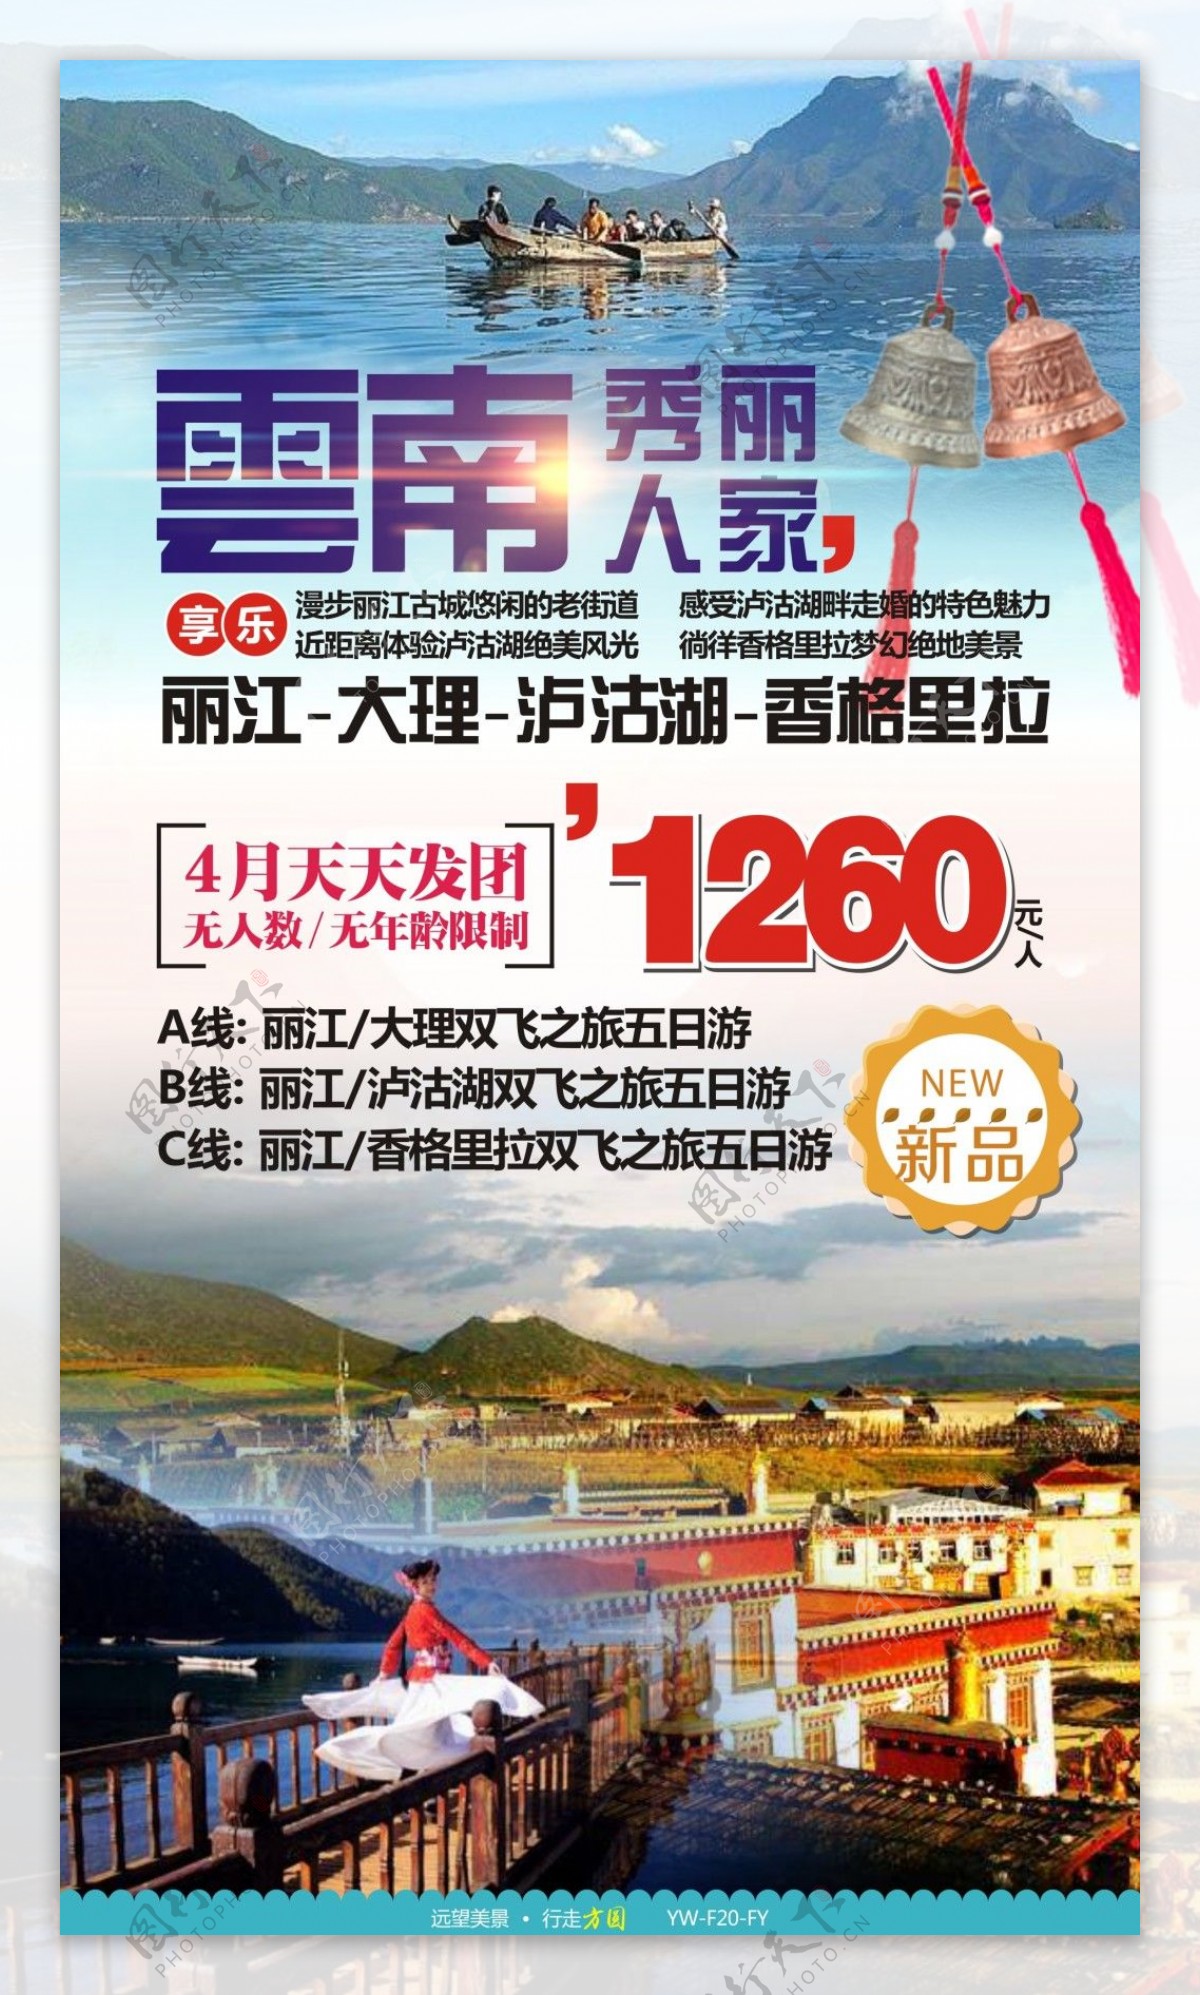 秀丽人家云南旅游广告宣传图